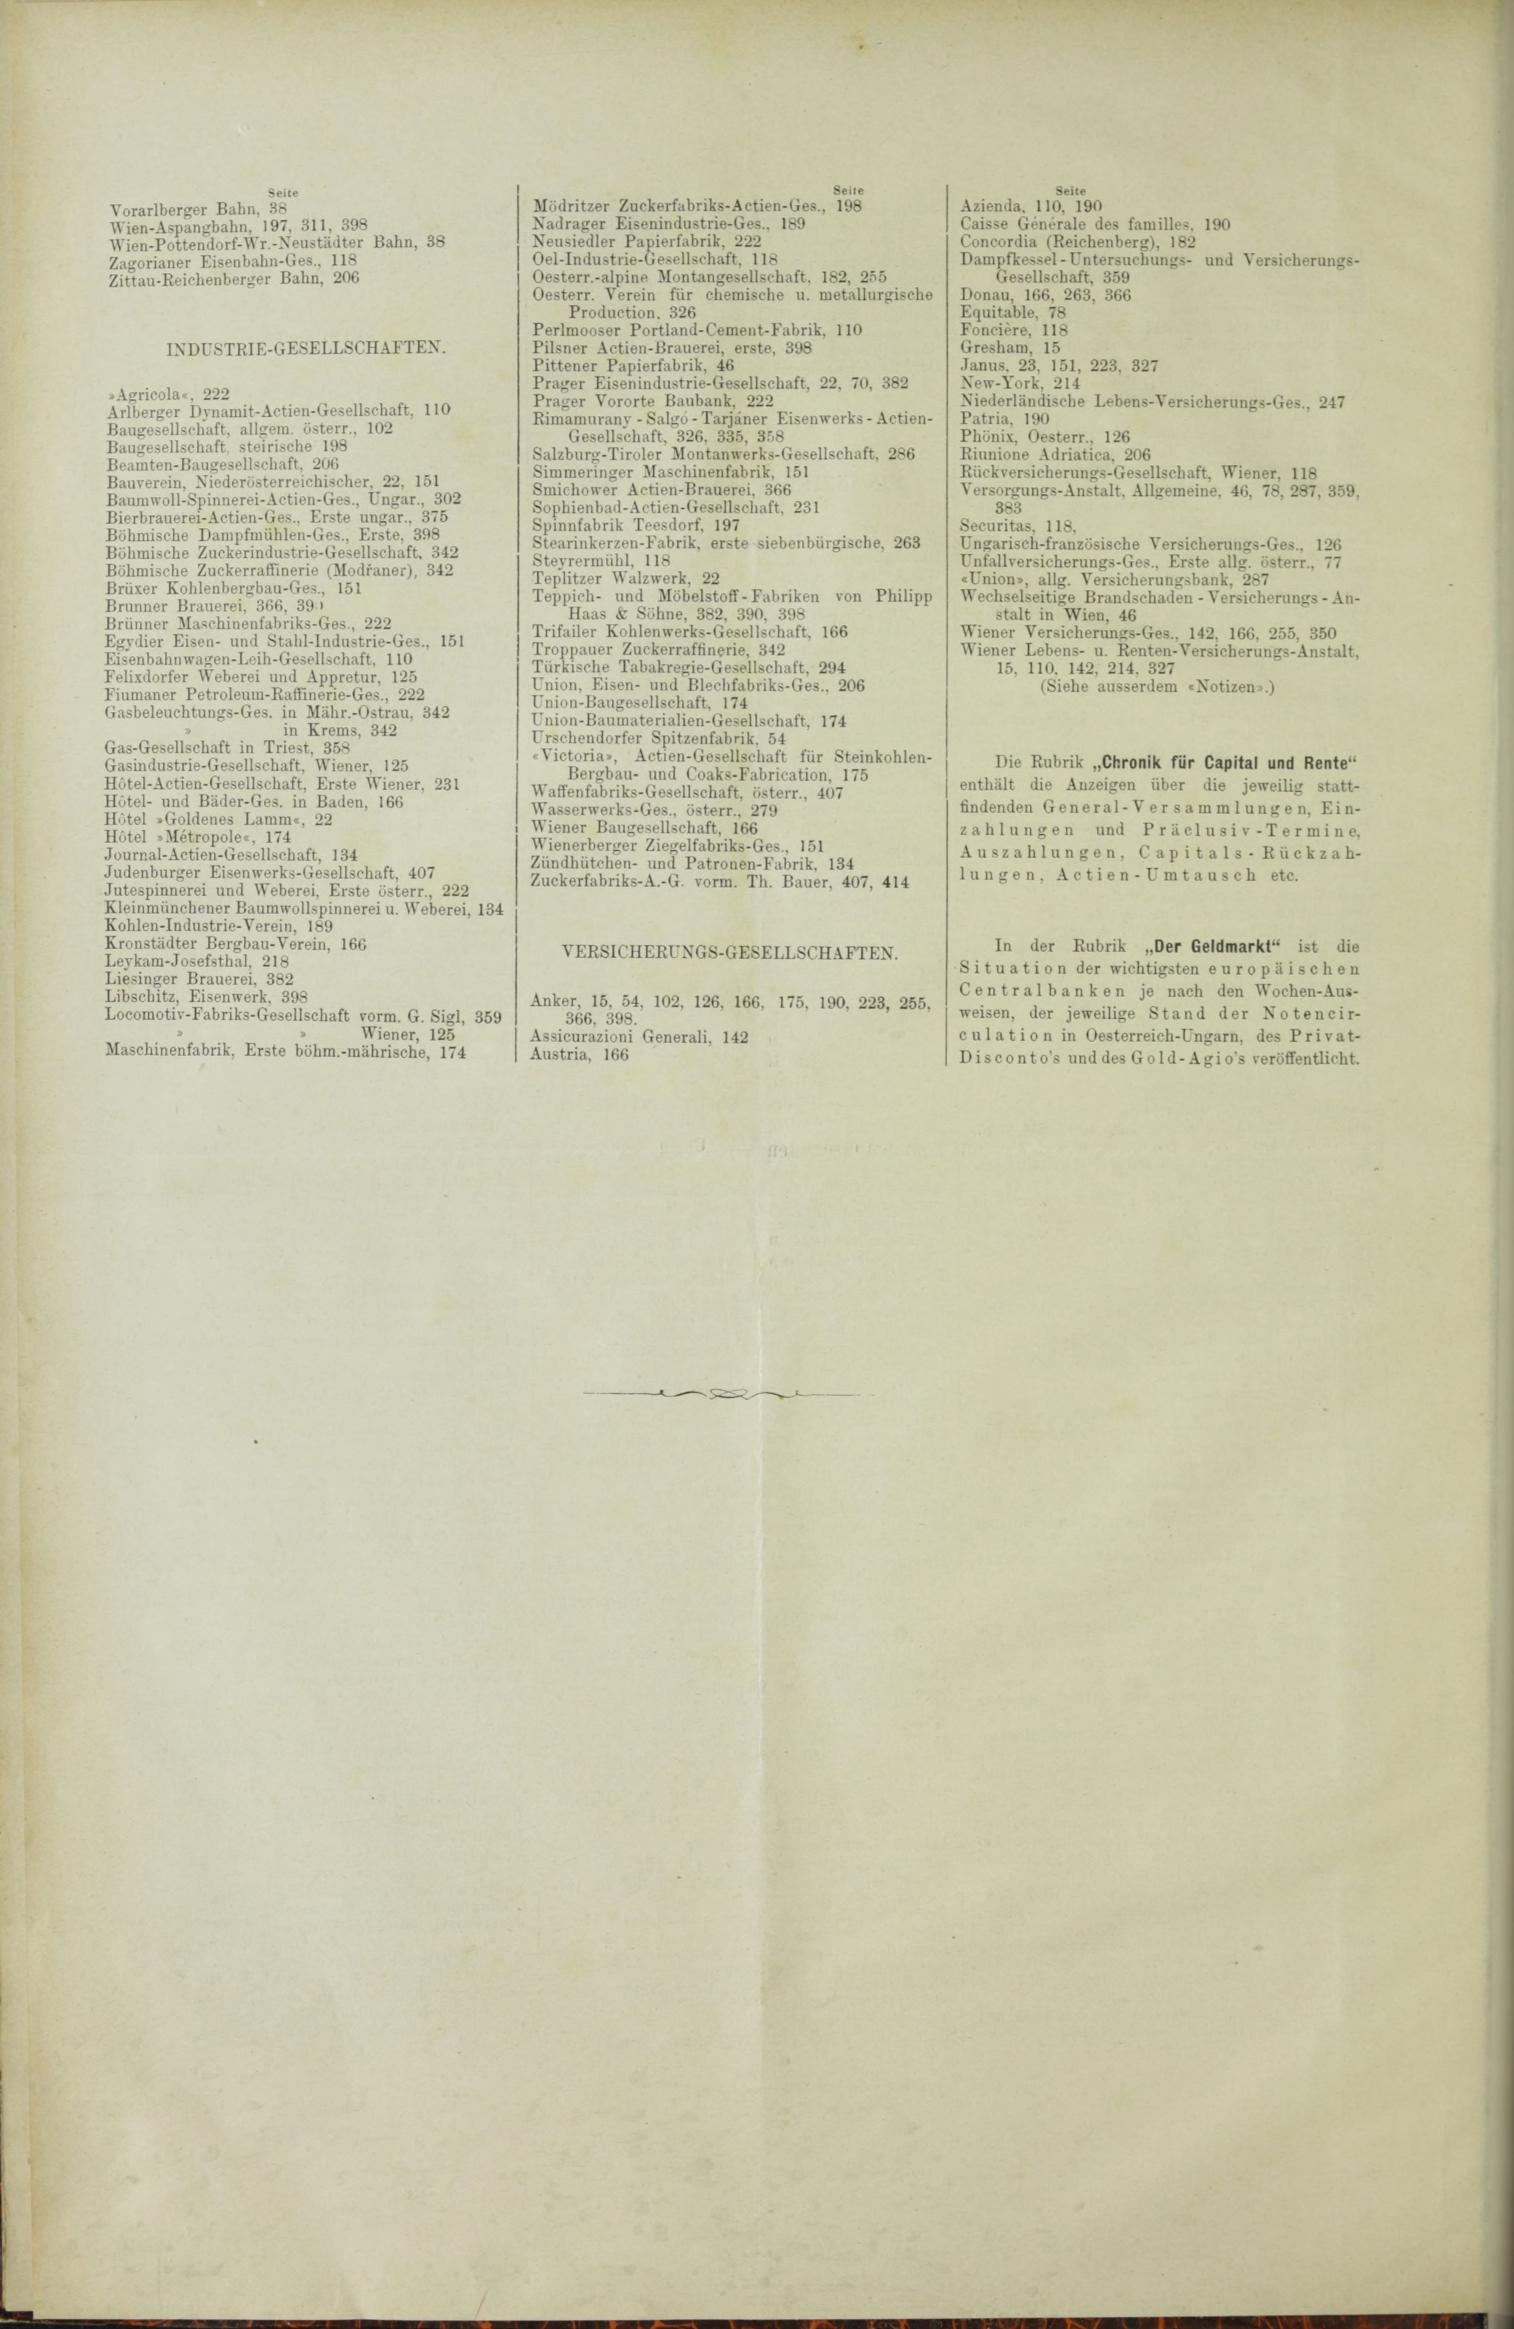 Der Tresor 29.07.1886 - Seite 12